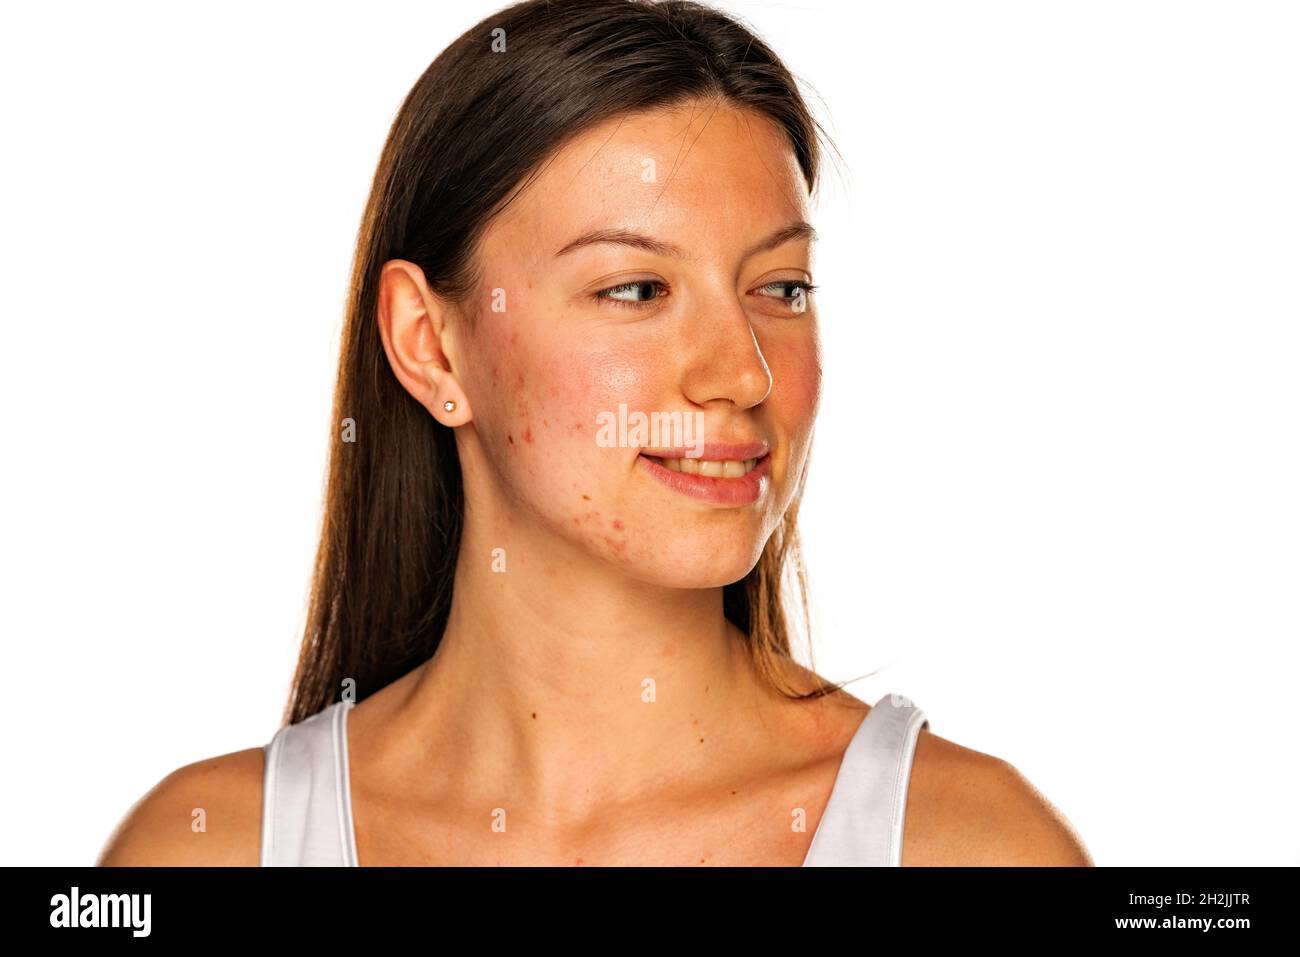 Schöne lächelnde Frau ohne Make-up und problematische Haut, die auf einem weißen Hintergrund zur Seite schaut Stockfoto